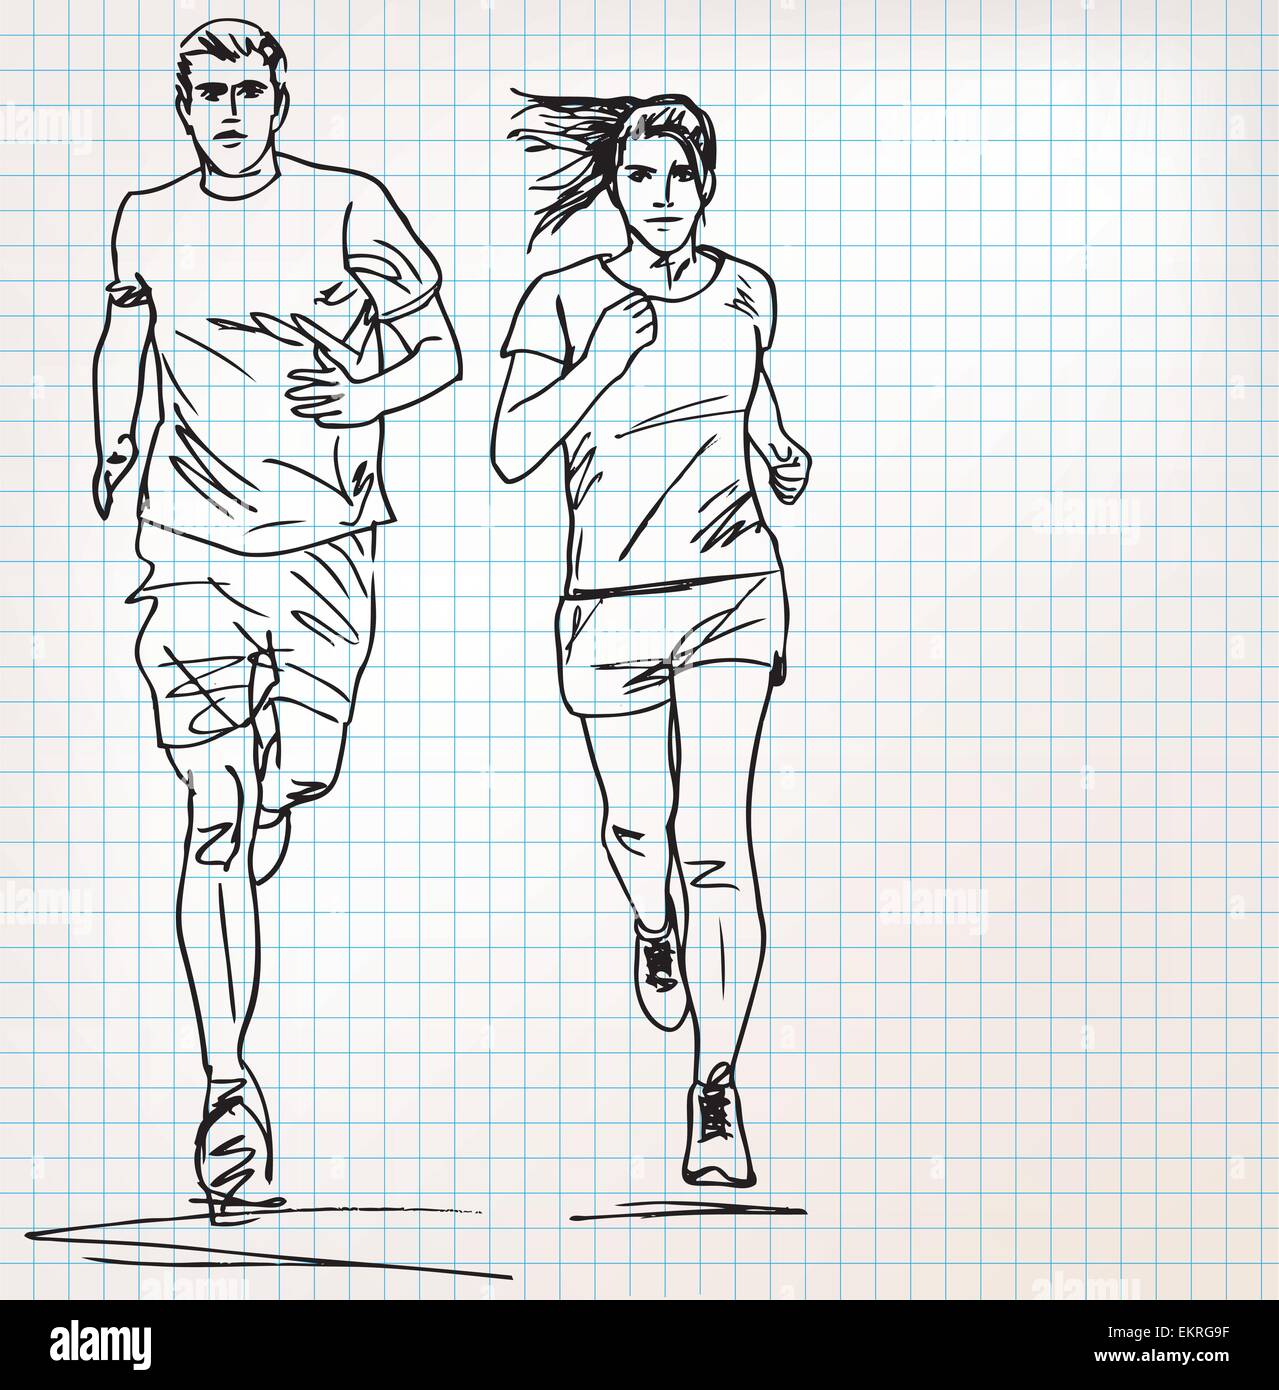 male runner sketch illustration Stock Vector Image & Art - Alamy